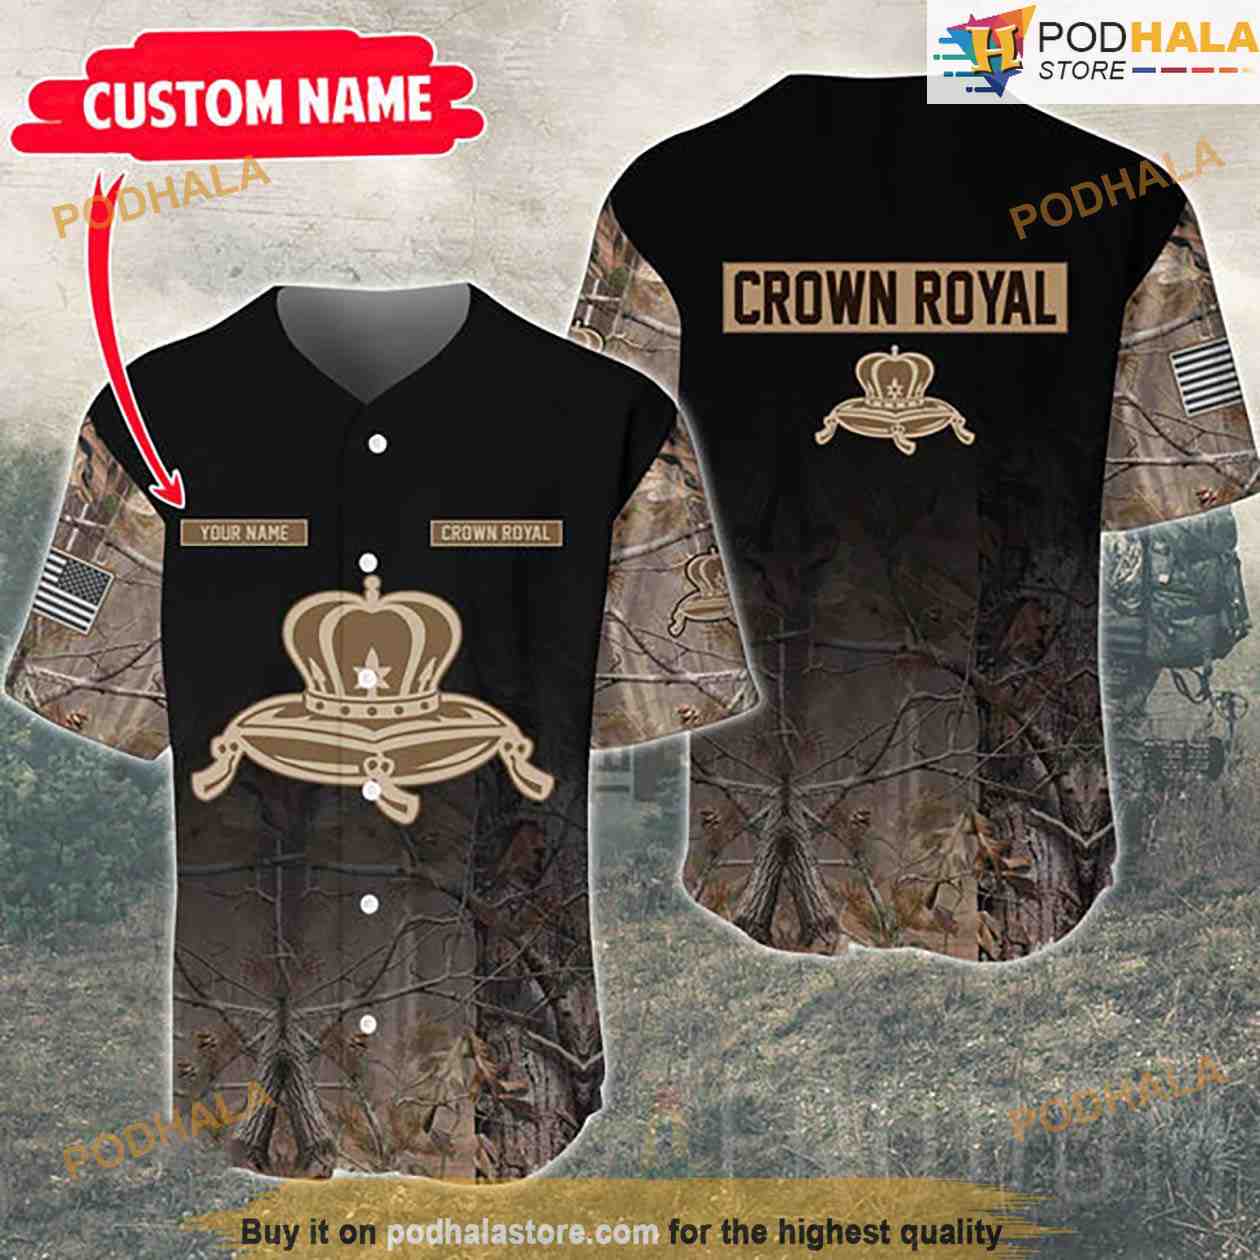 Crown Royal Baseball Jersey Personalized Baseball Jersey 